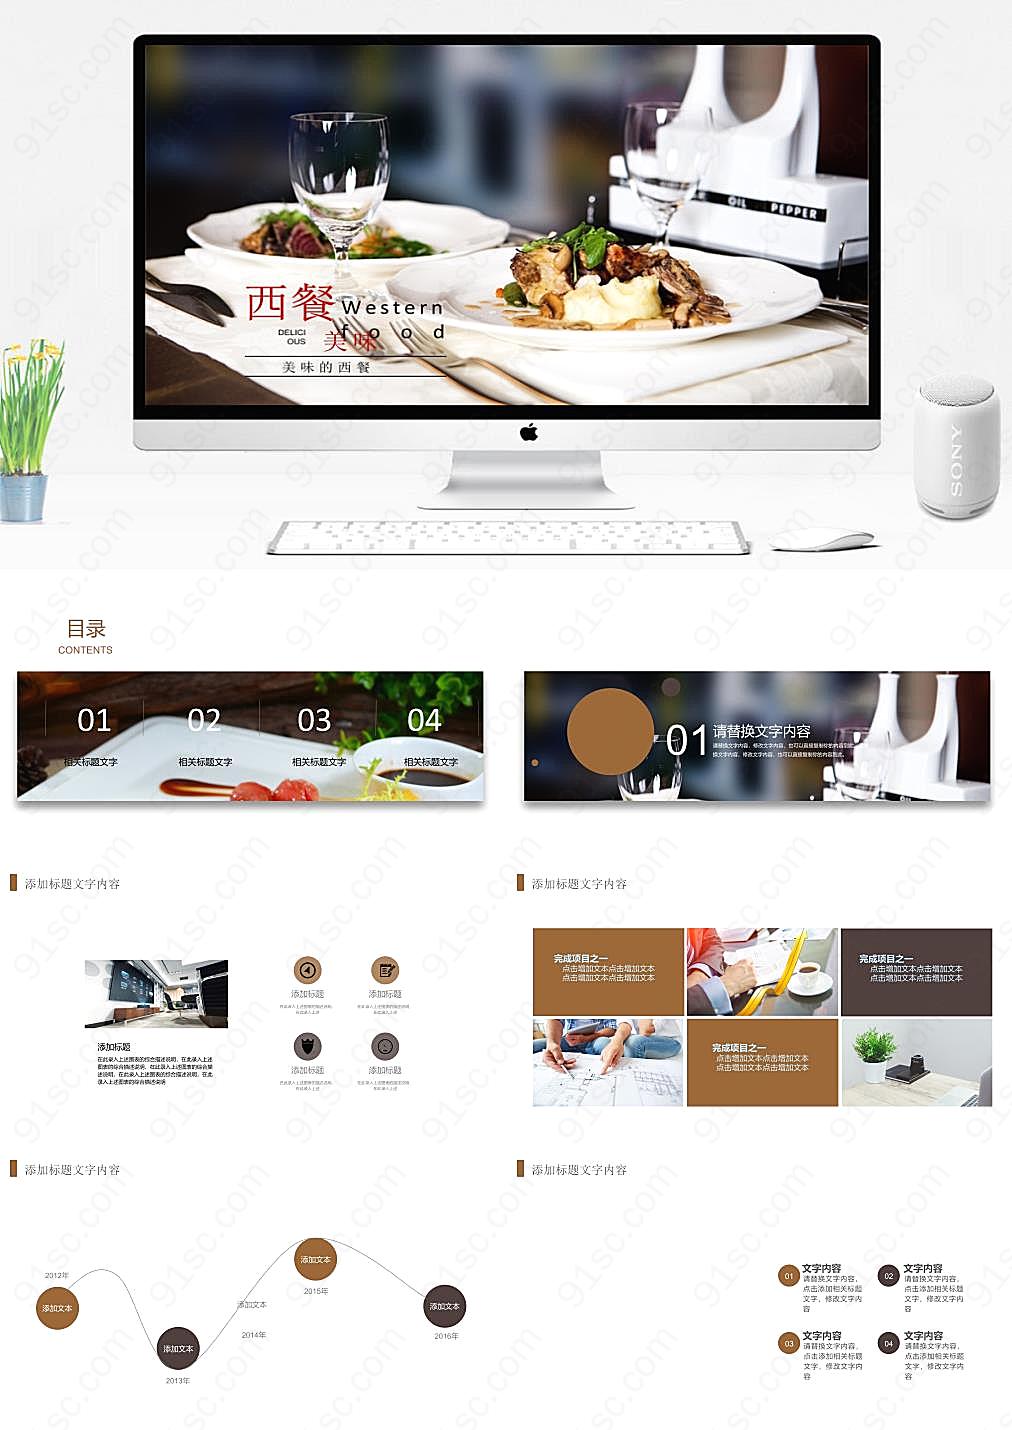 西餐餐饮创业计划创造美食商机的蓝图餐饮美食PPT模板下载